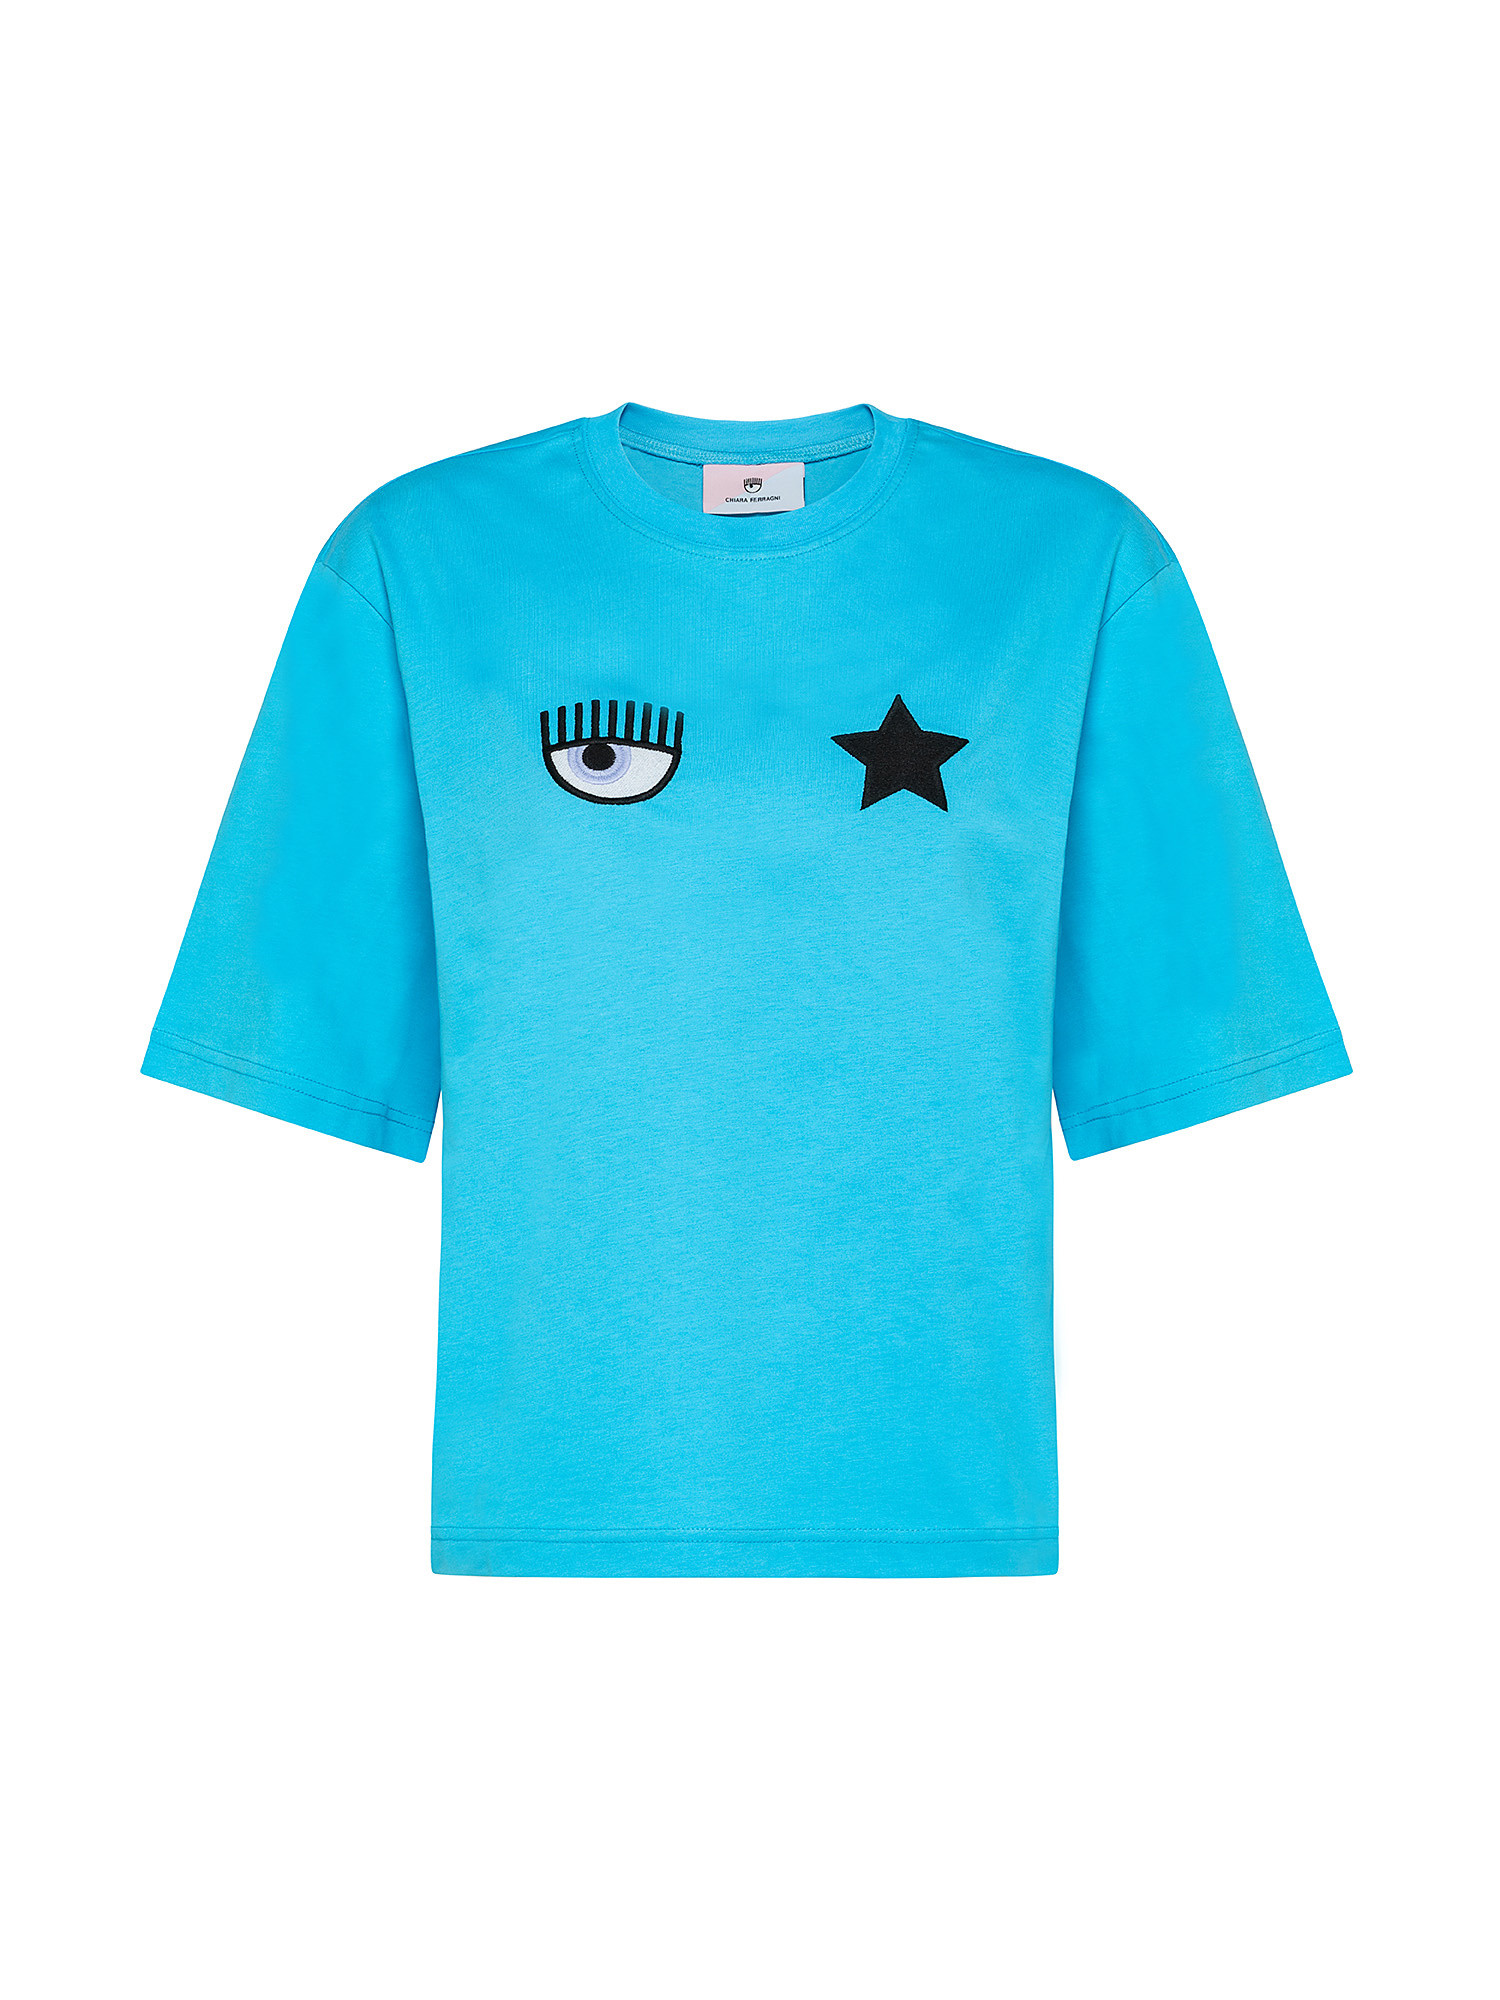 T-shirt Eye Star, Azzurro turchese, large image number 0